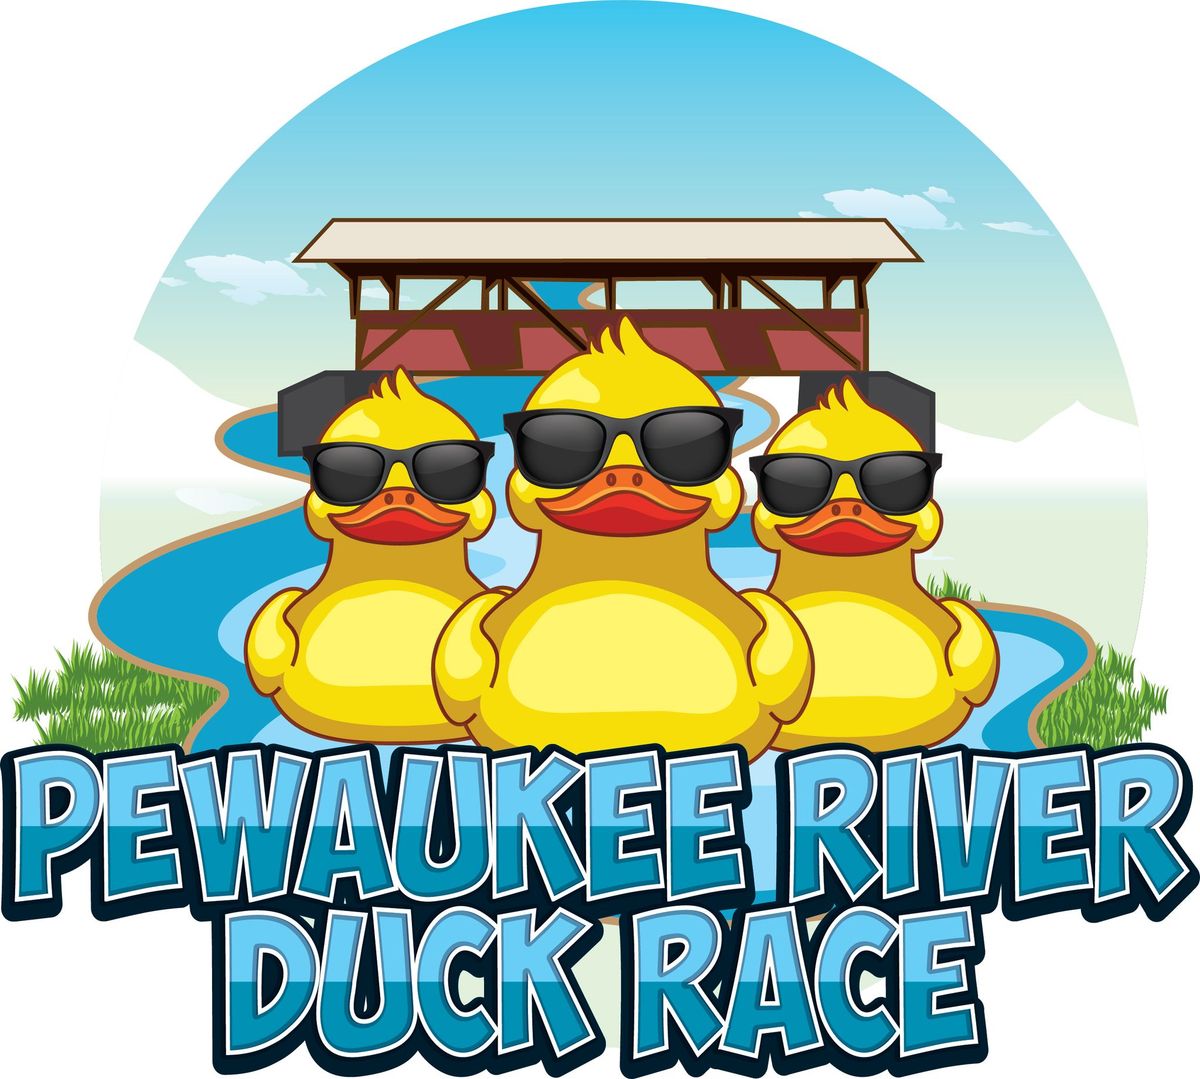 Pewaukee River Duck Race